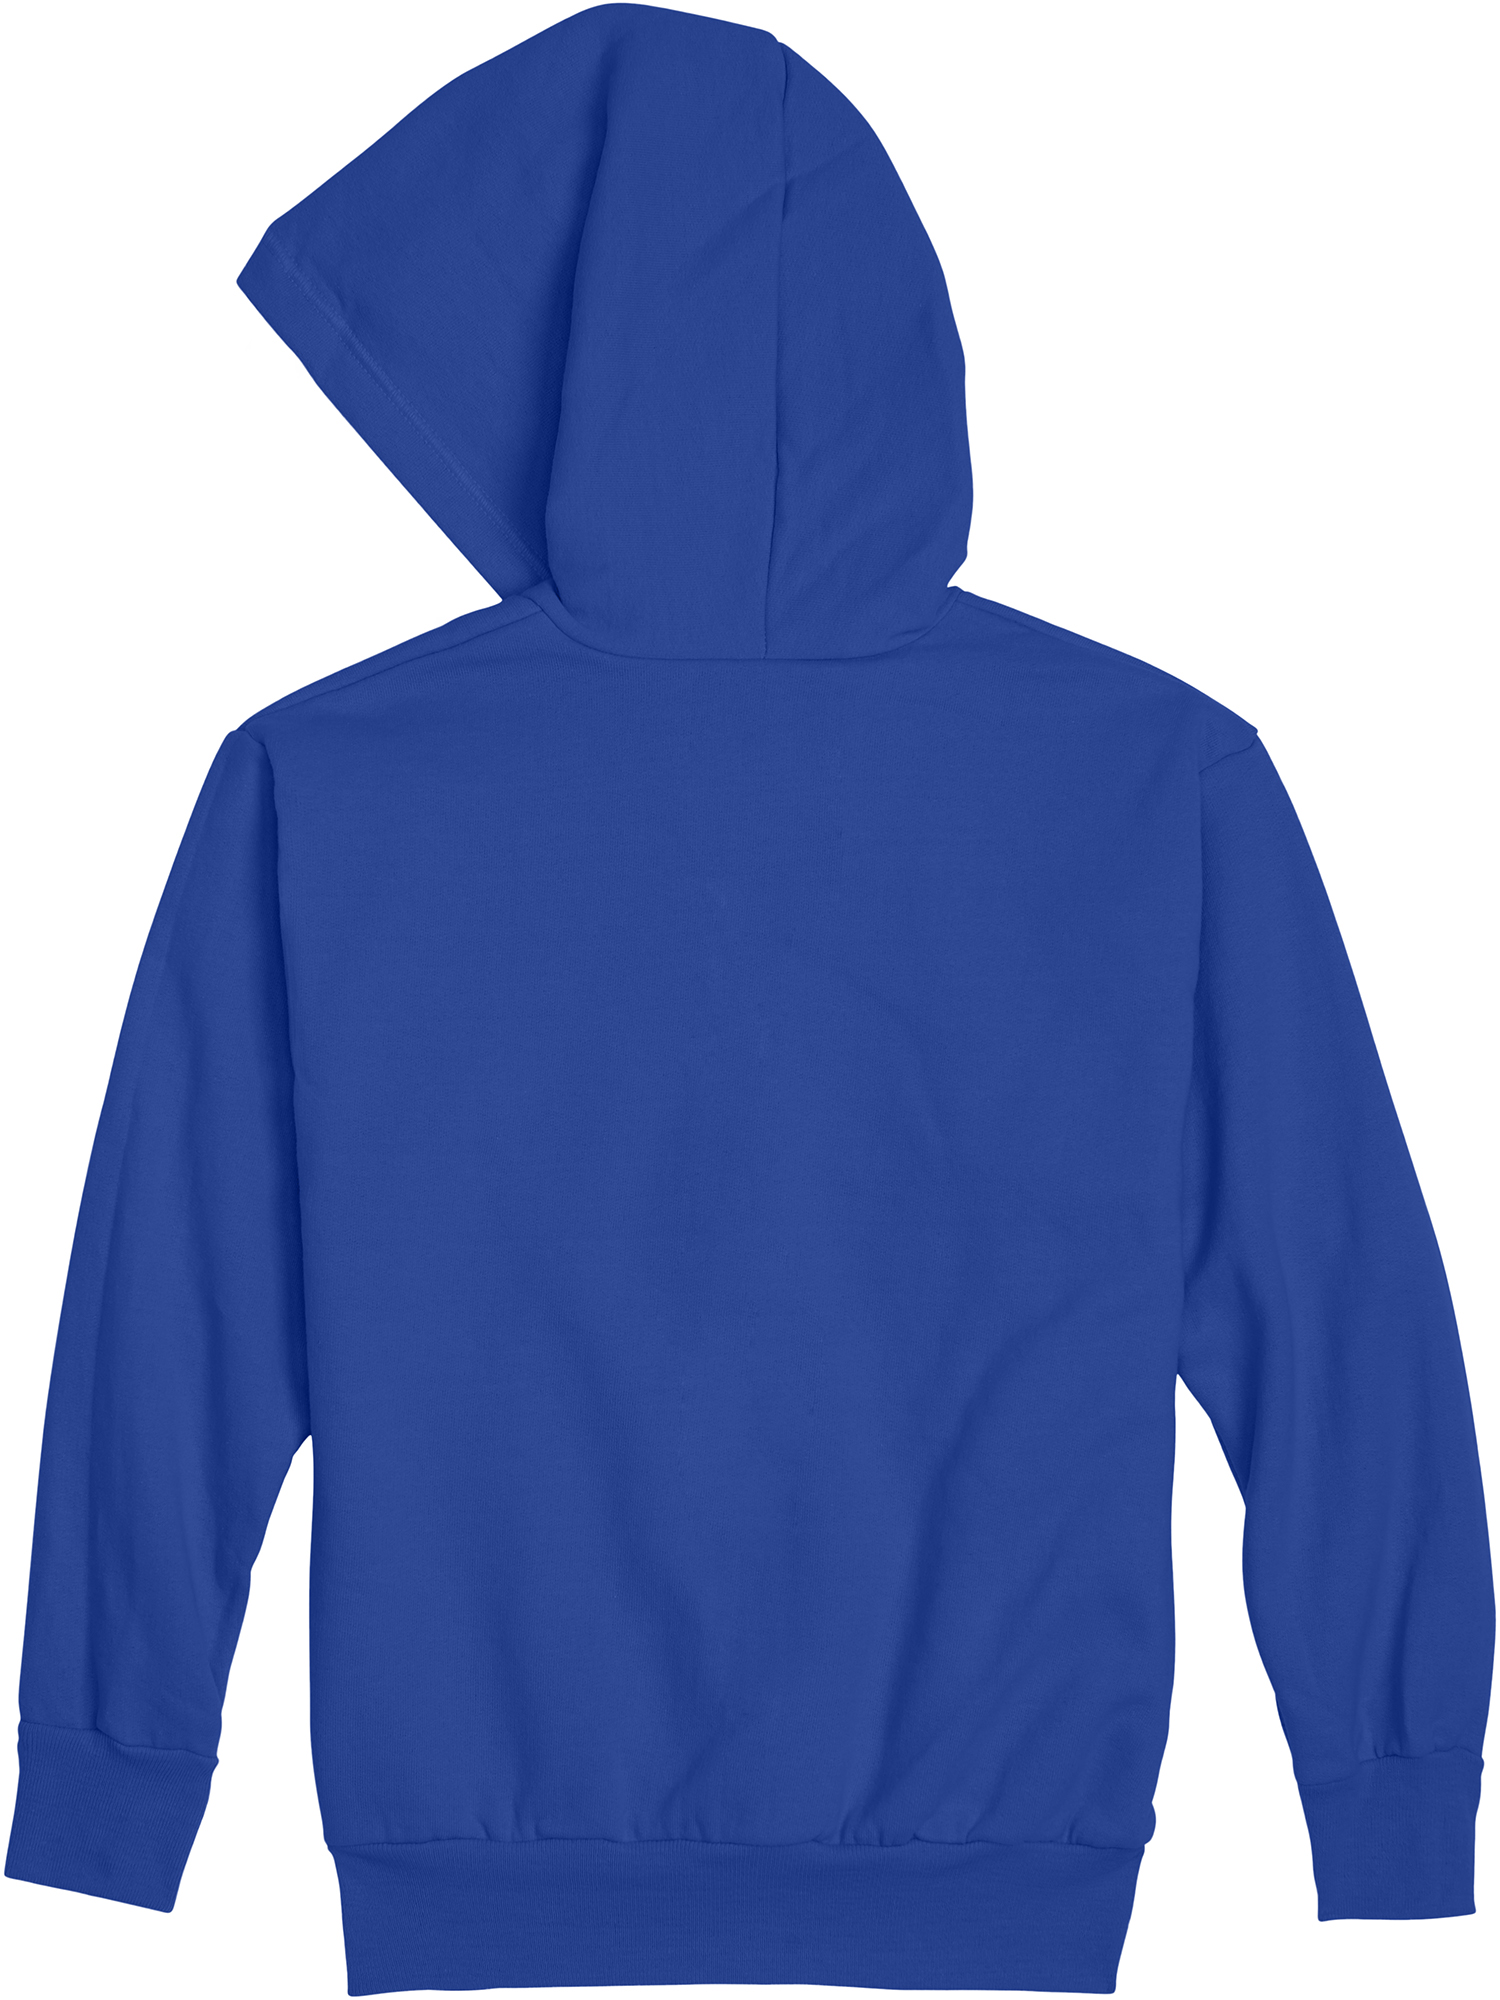 Hanes Boys EcoSmart Fleece Full Zip Hooded Jacket, Sizes 4-18 - image 2 of 5